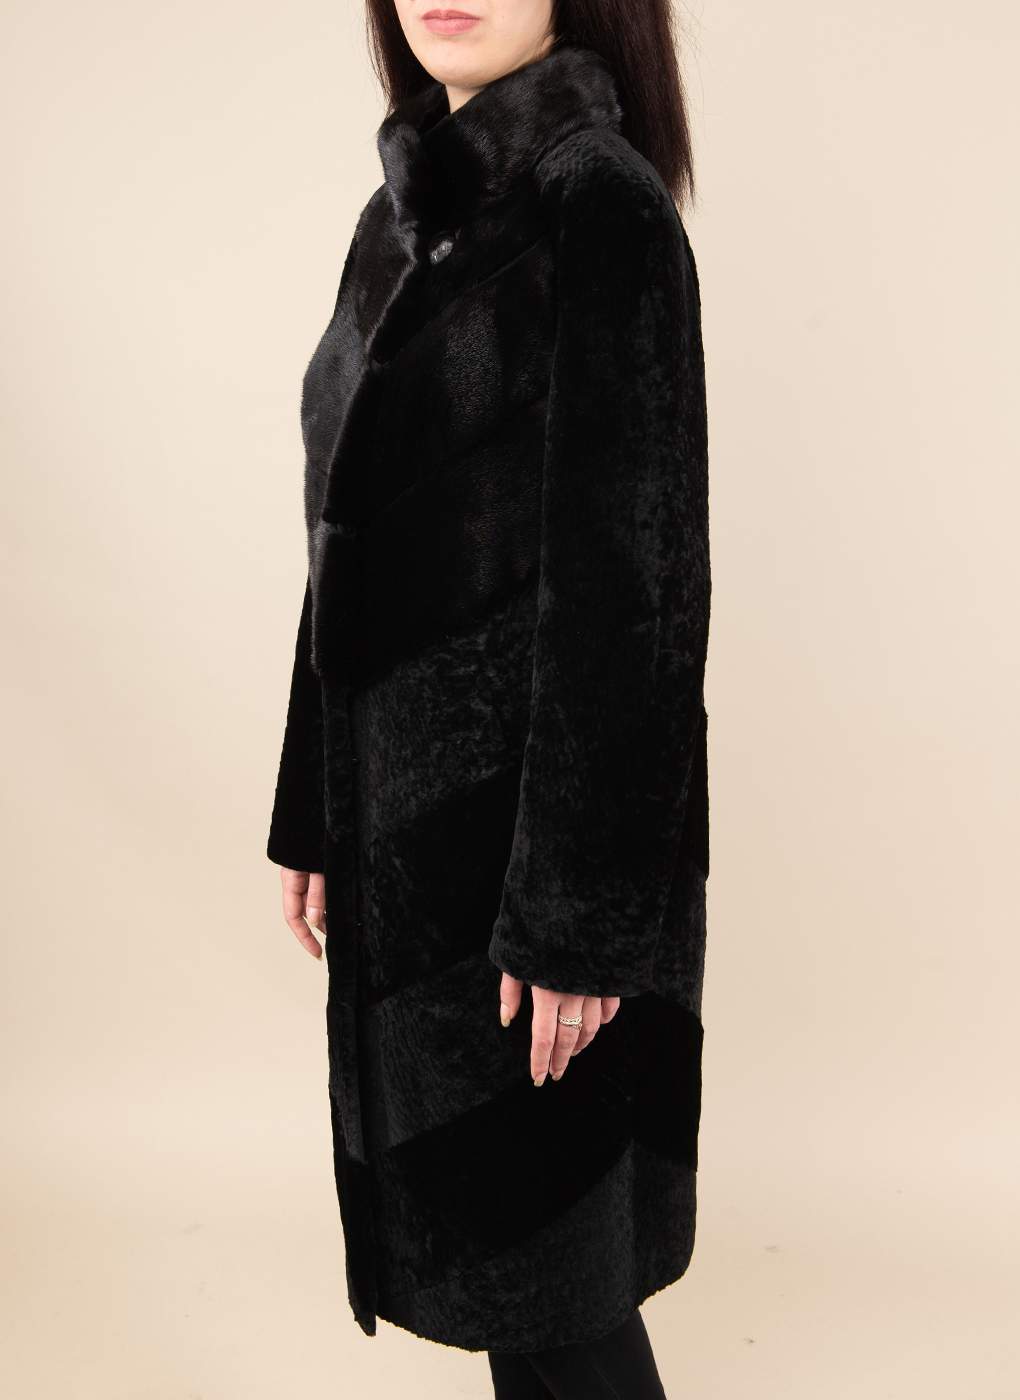 Пальто женское Alfafur 49530 черное 54 RU